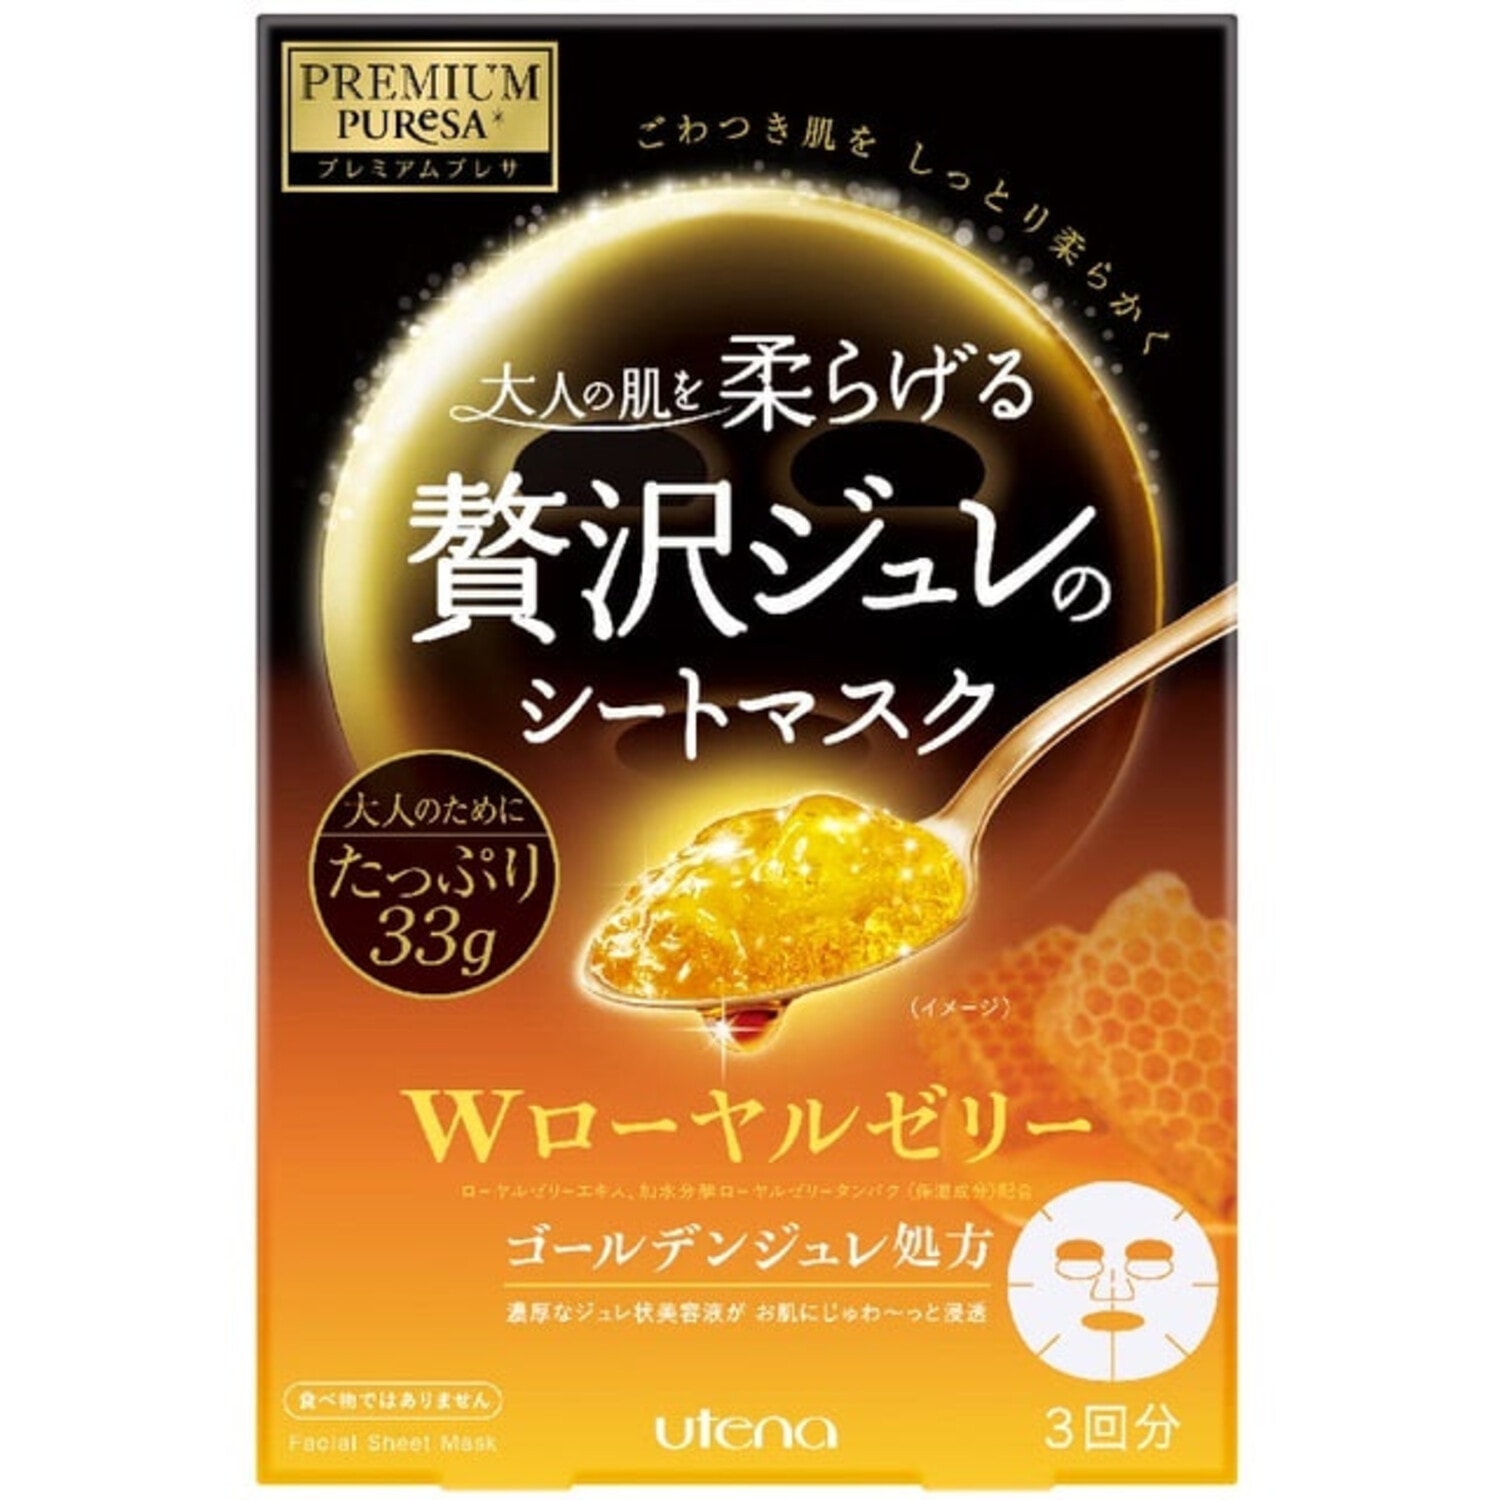 Utena "Premium Puresa Golden" Подтягивающая желейная маска для лица, с экстрактом маточного молочка, церамидами, скваланом и трегалозой, 1 шт. / 299757